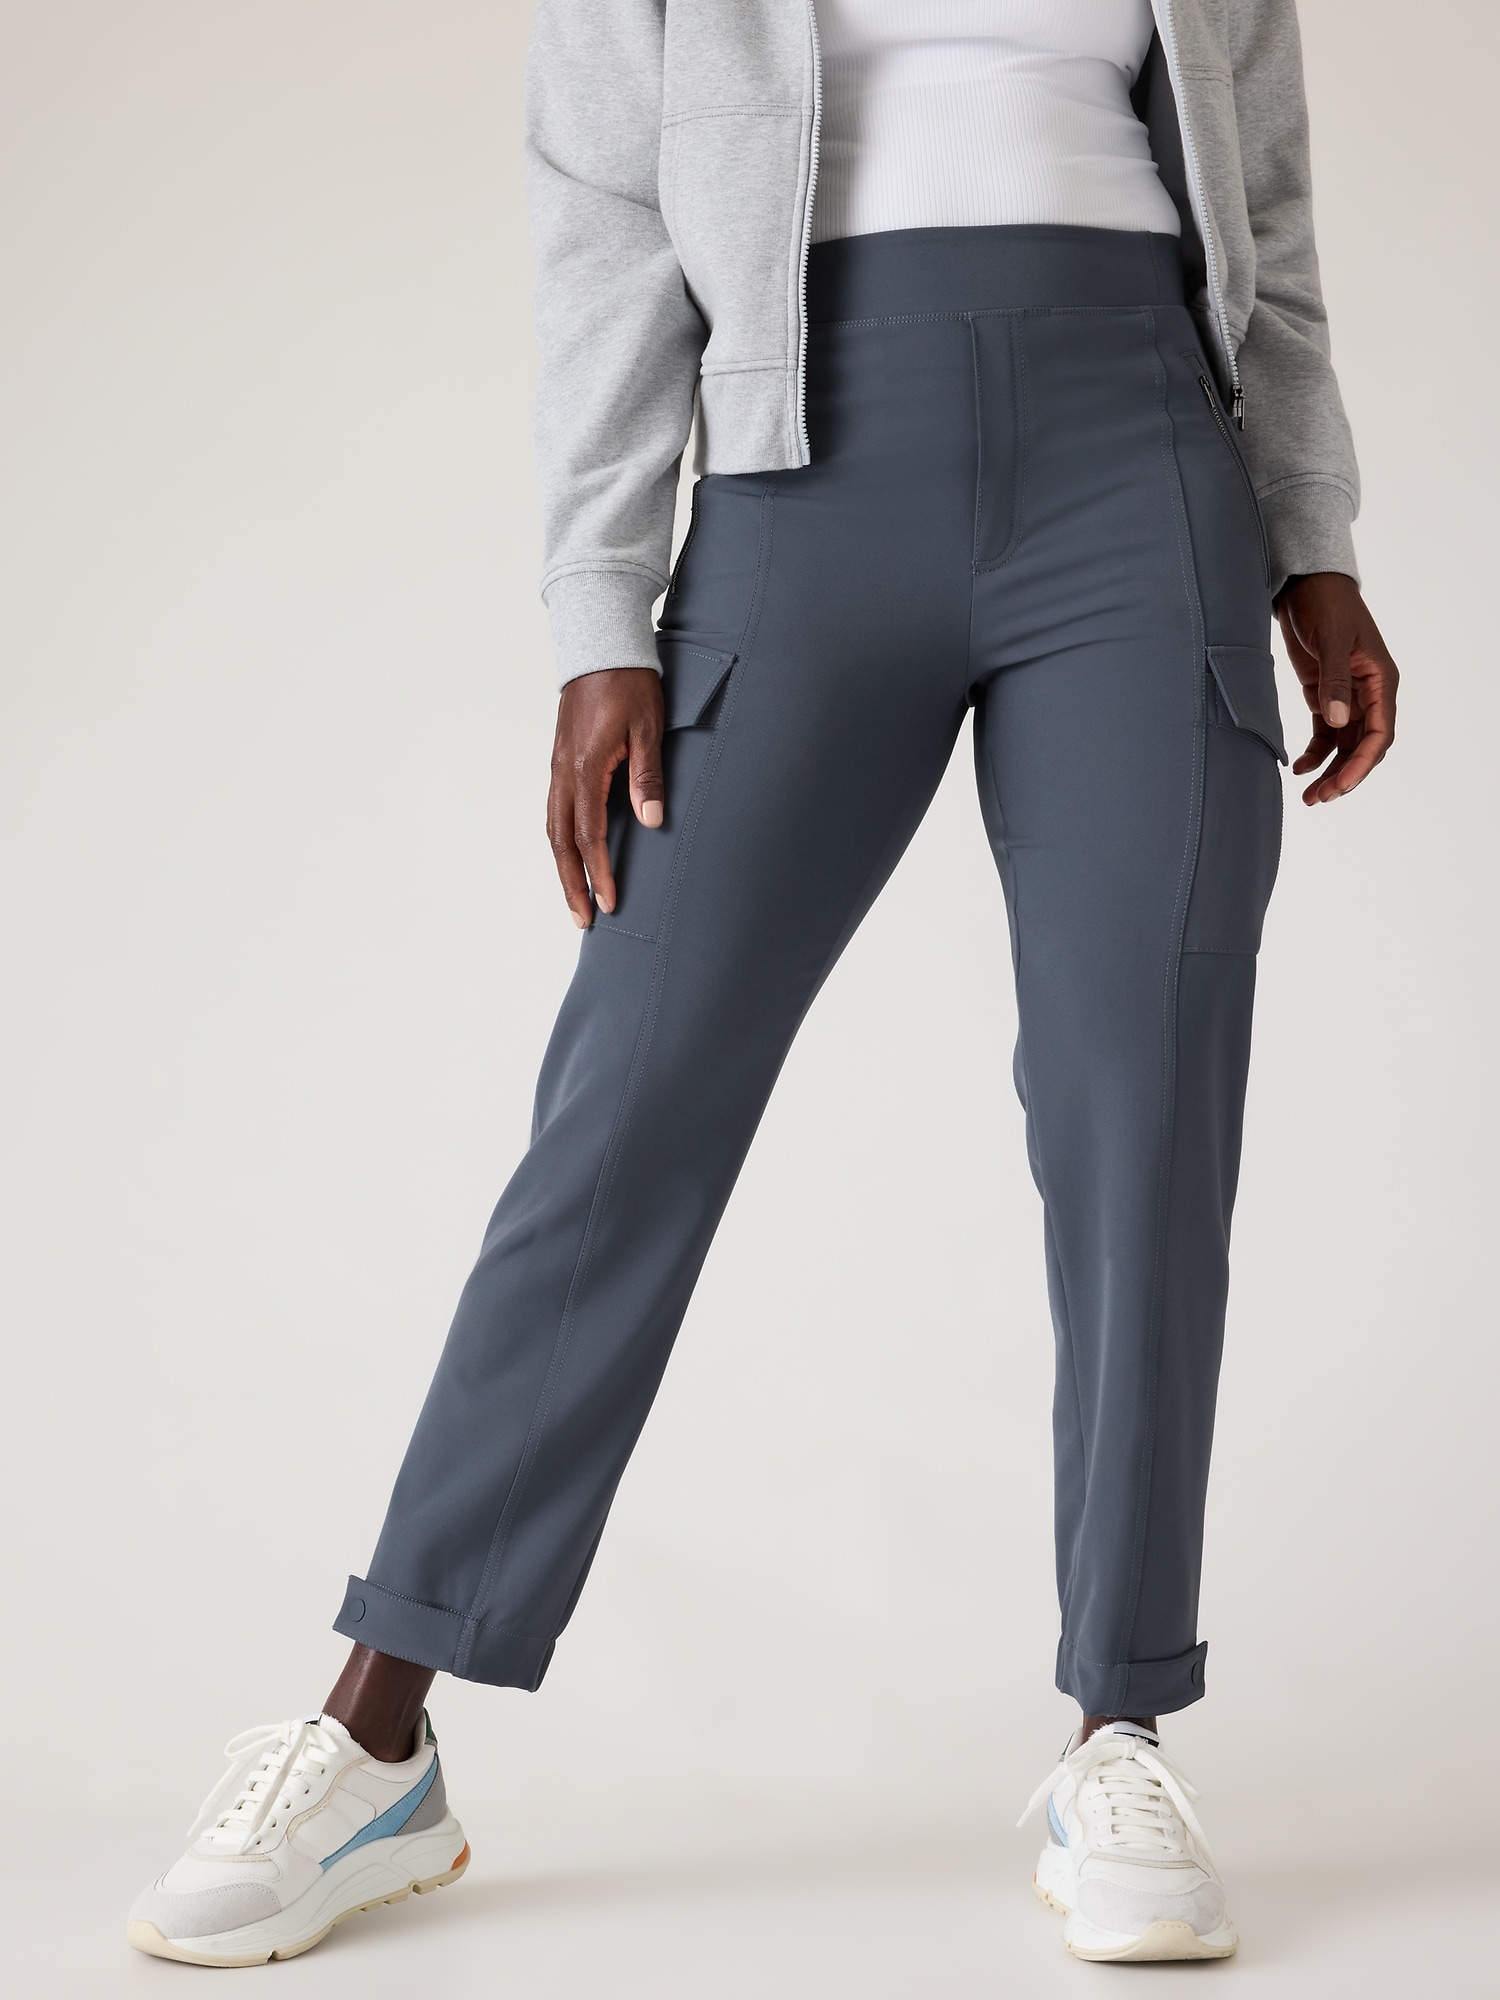 Shop Generic (Black)Cargo Pants Women Plus Size Belt Less High